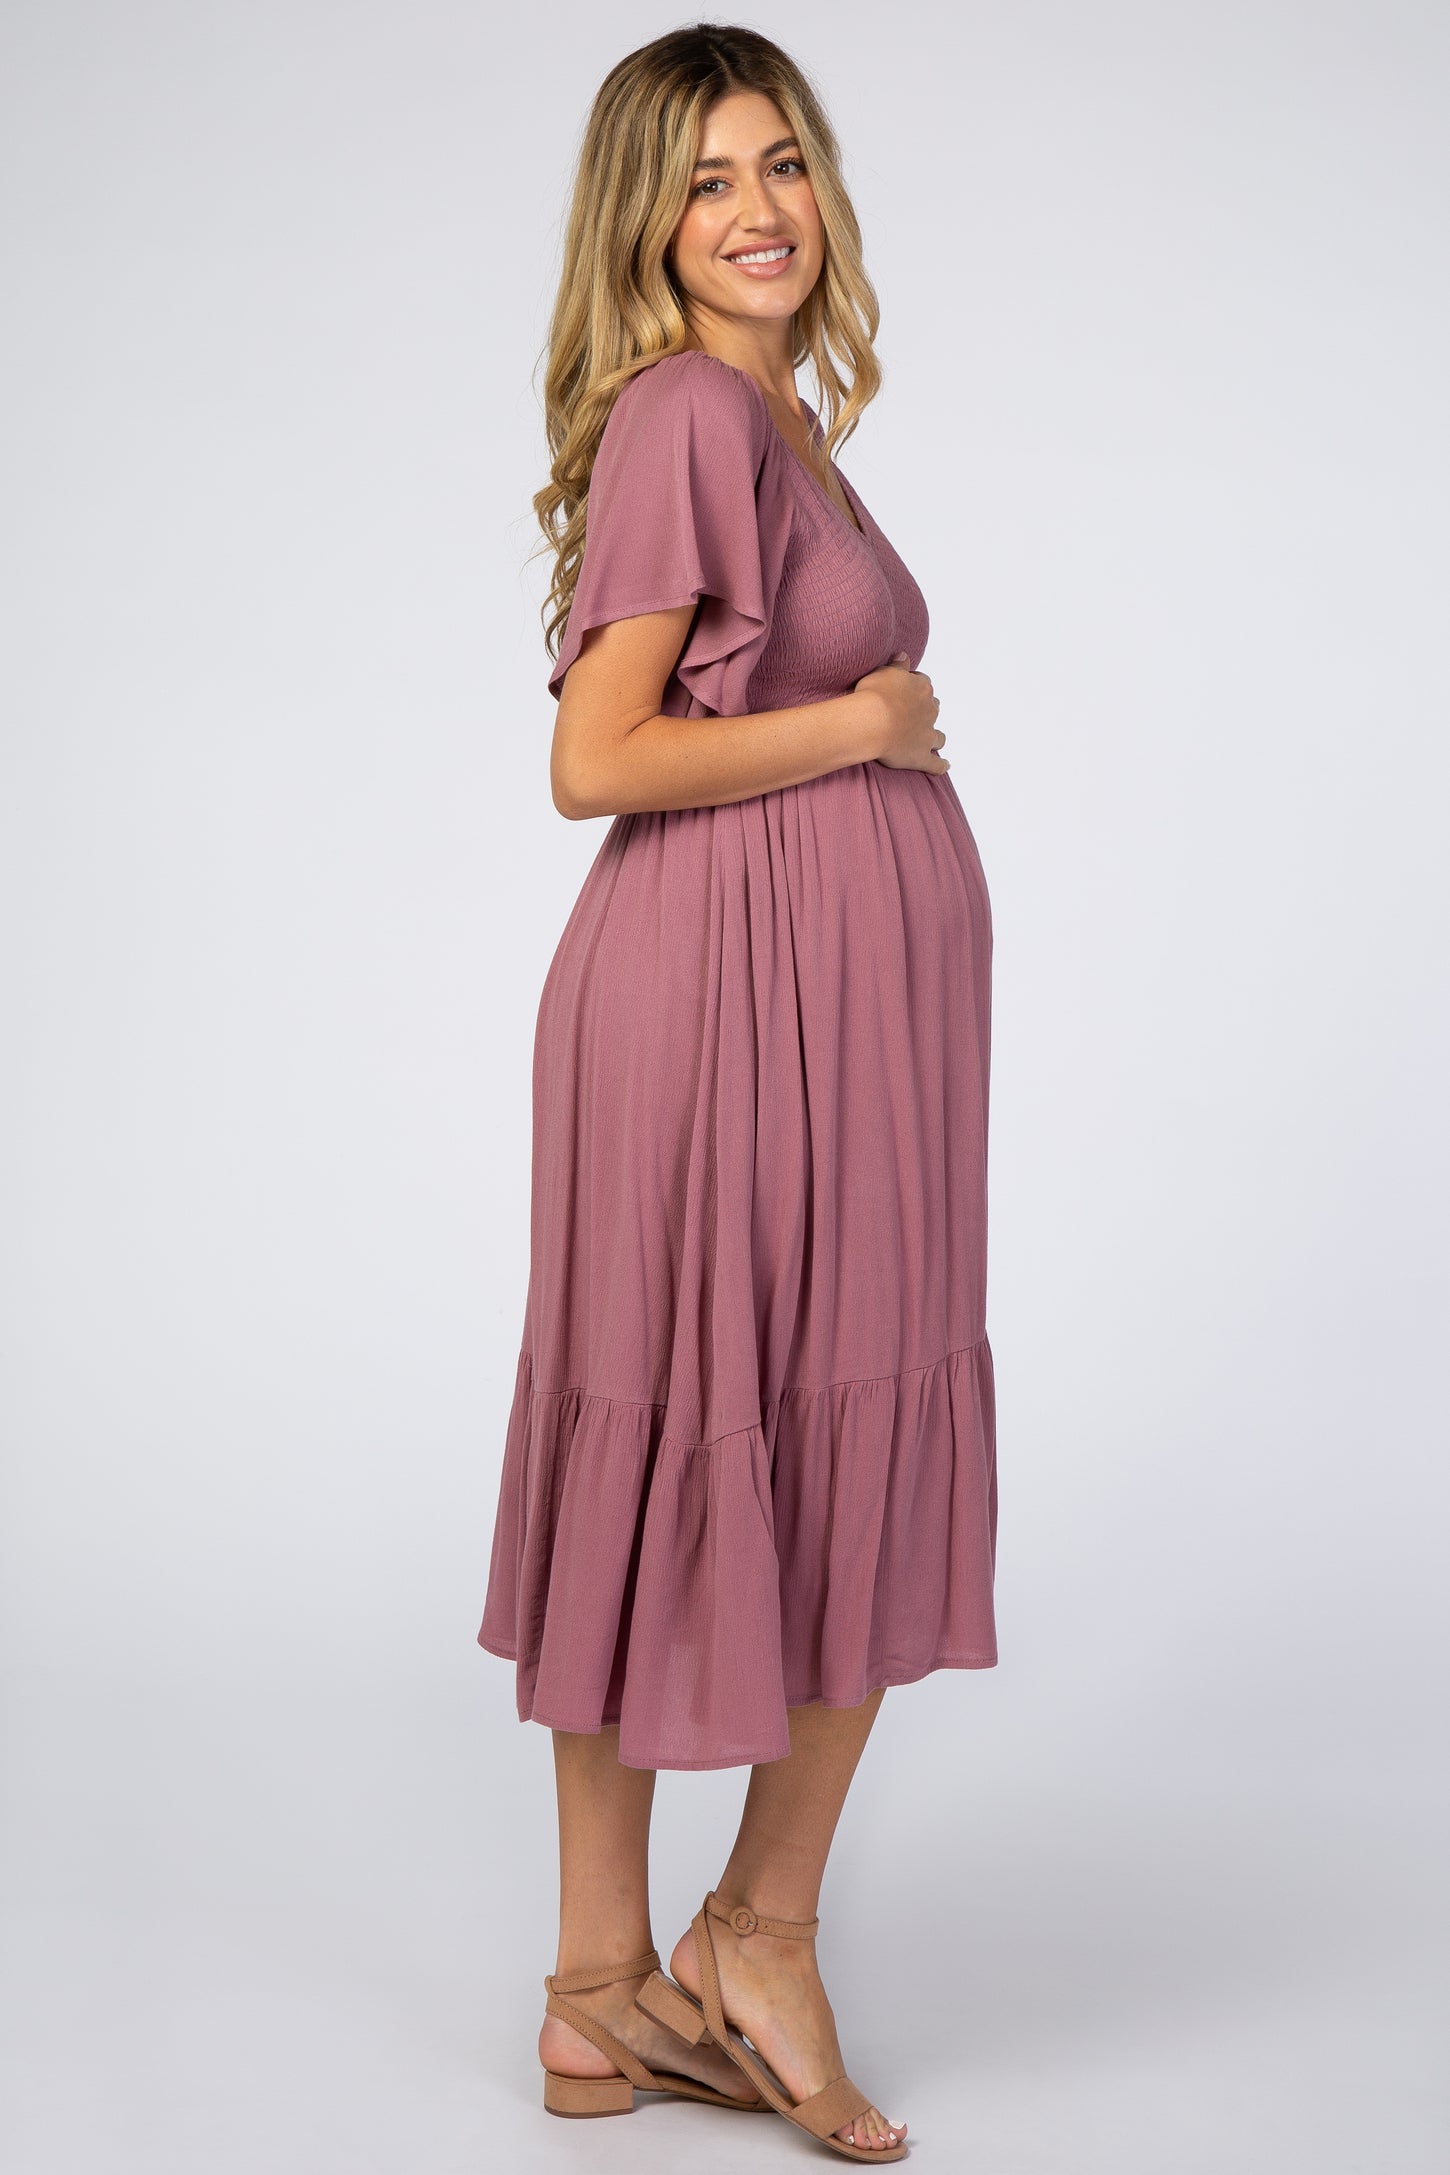 Mauve Smocked Ruffle Maternity Dress– PinkBlush